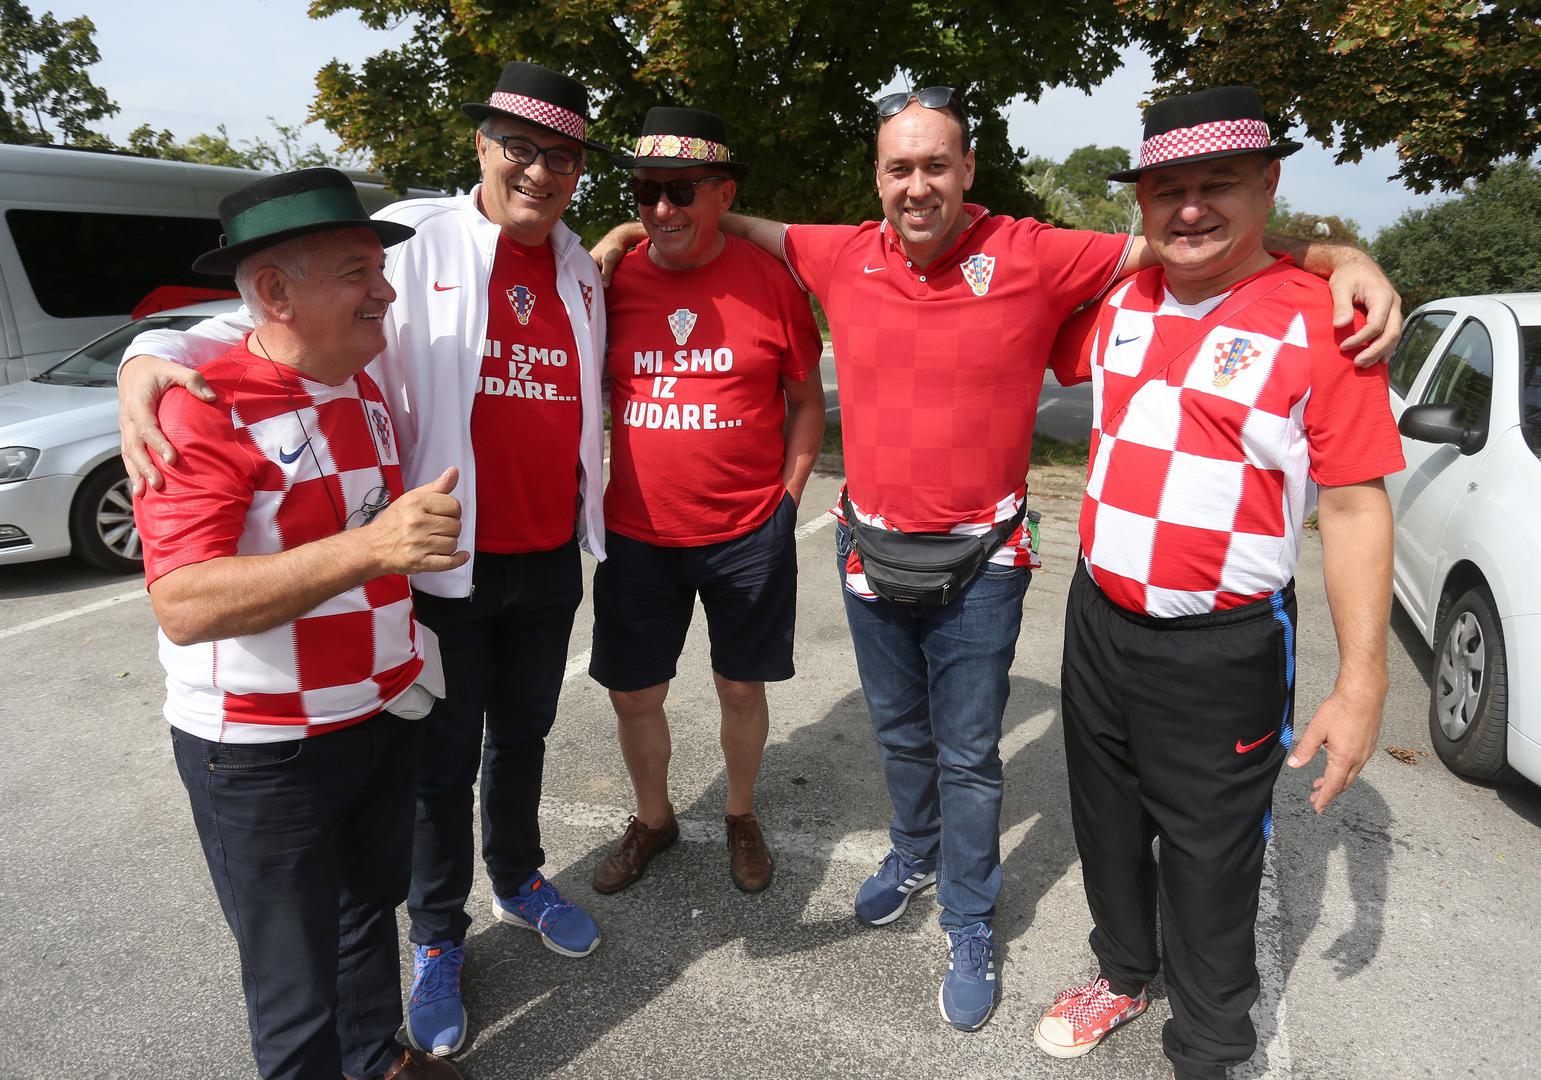 Hrvatski navijači "naoružani" su šalovima, dresovima i zastavama